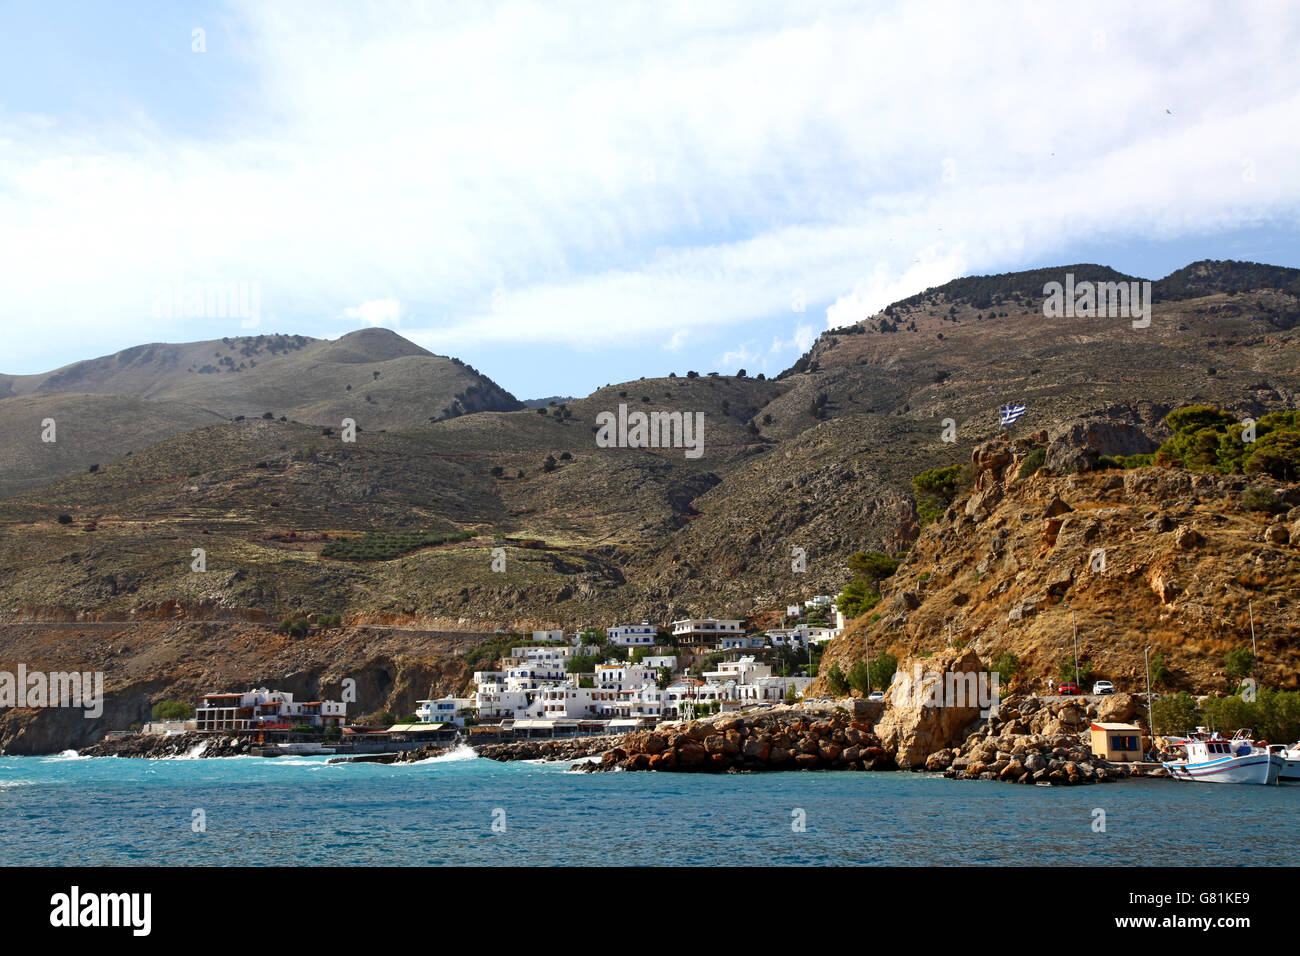 Una piccola pesca e porto turistico nel sud di Creta, visto dal mare con le sue case dipinte di bianco e le montagne alle spalle Foto Stock